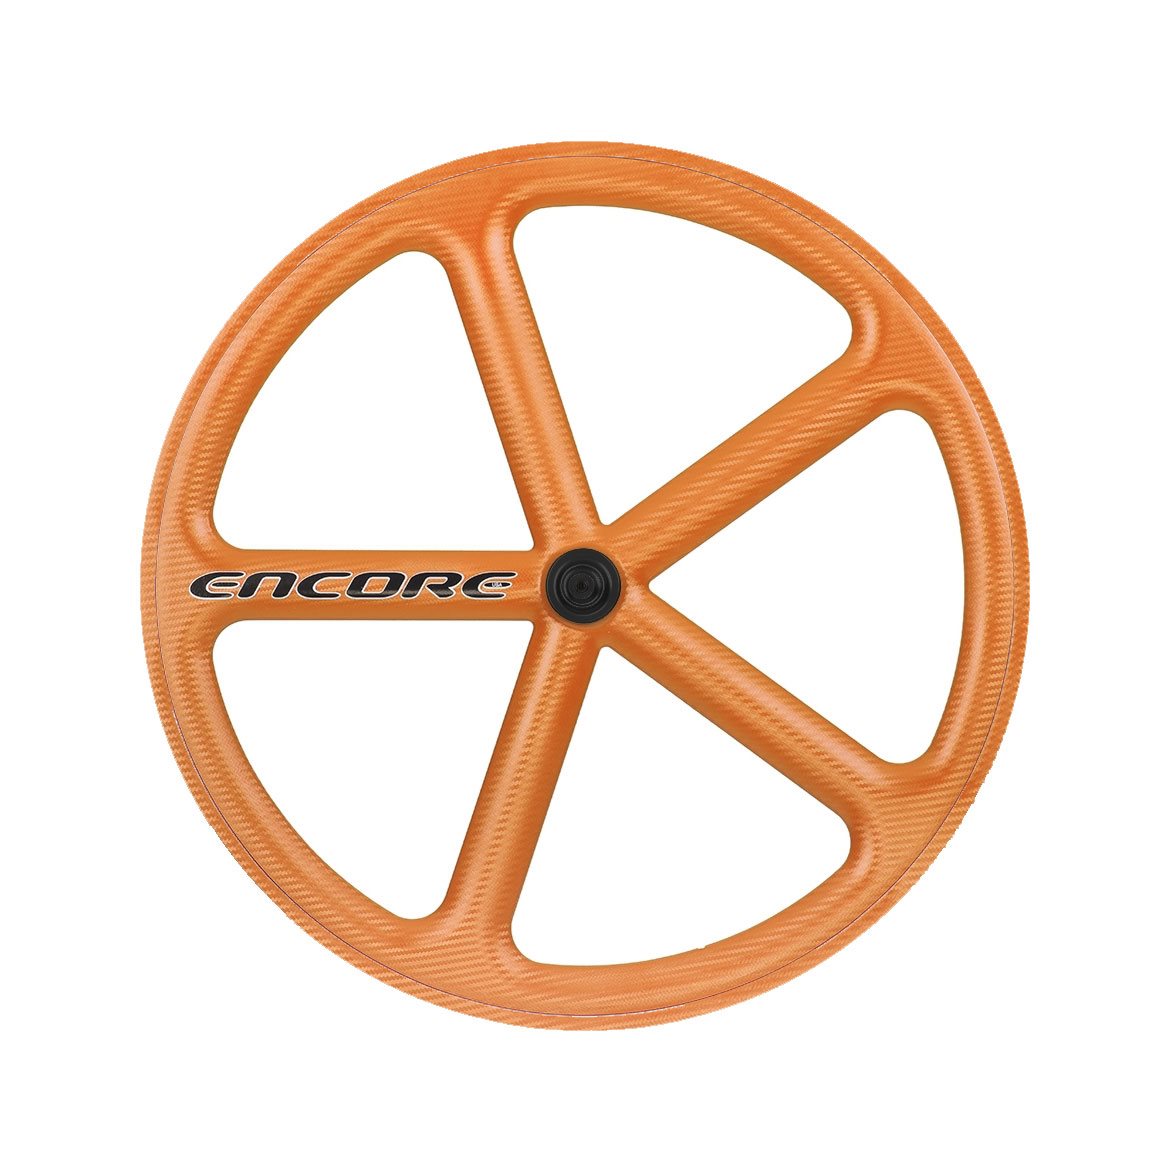 Vorderrad 700c Track 5-Speichen Carbongeflecht orange nmsw